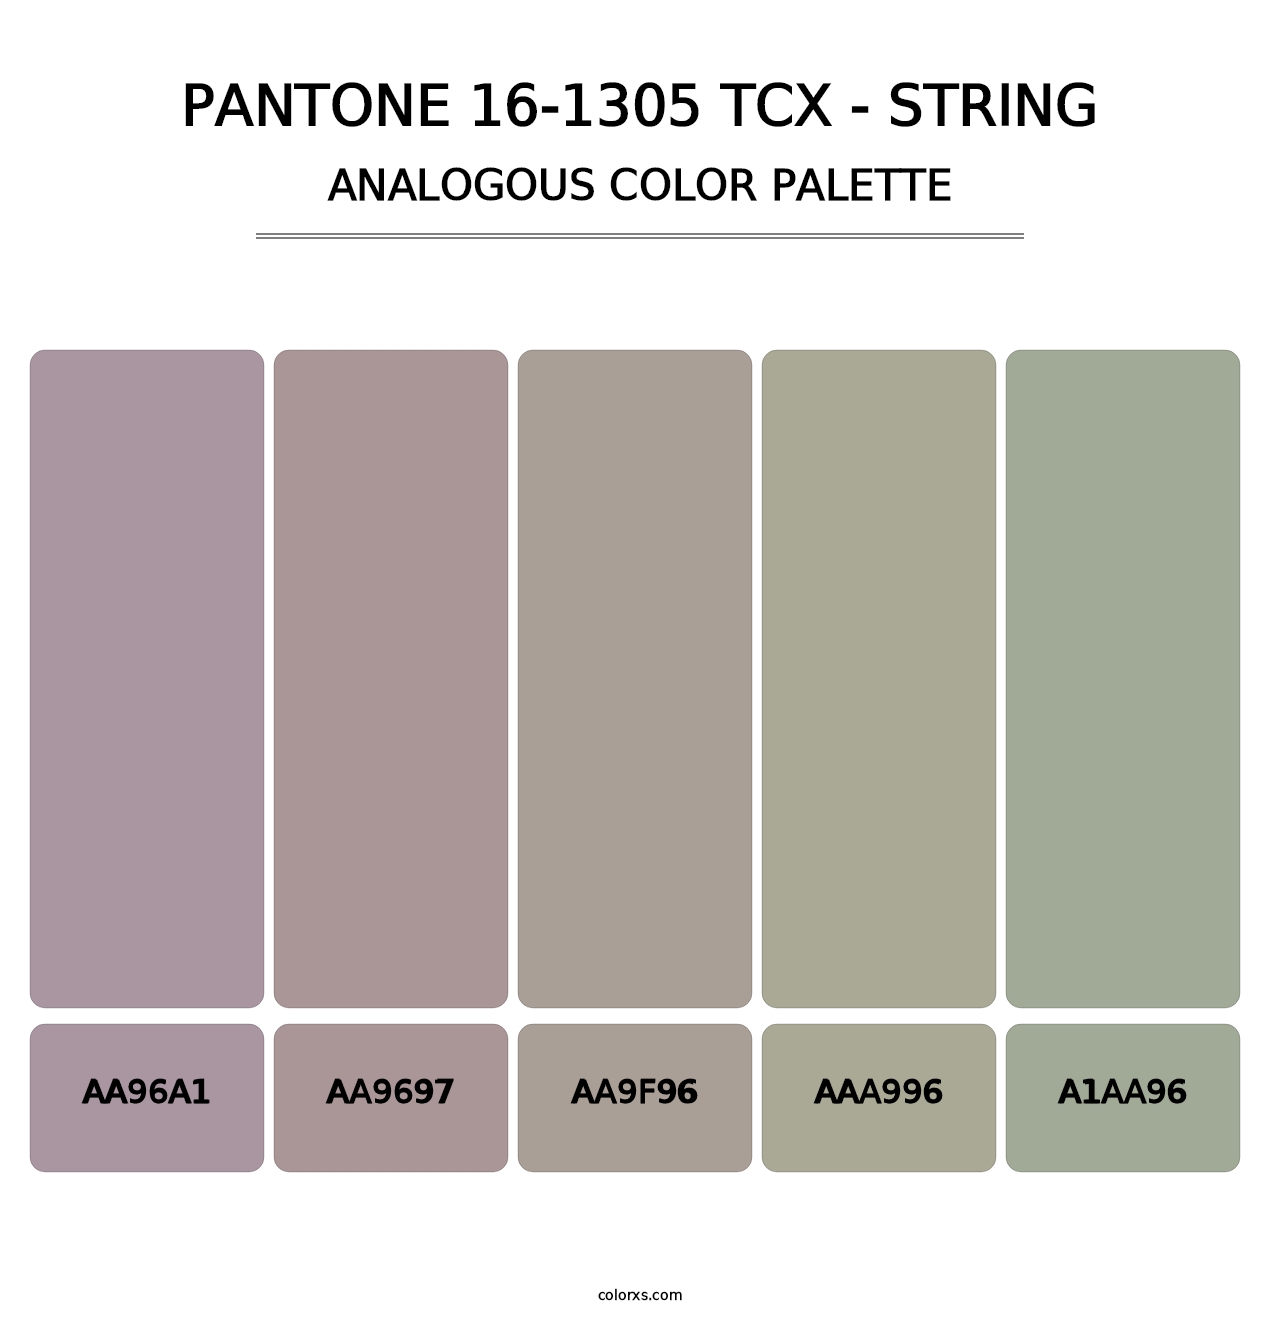 PANTONE 16-1305 TCX - String - Analogous Color Palette